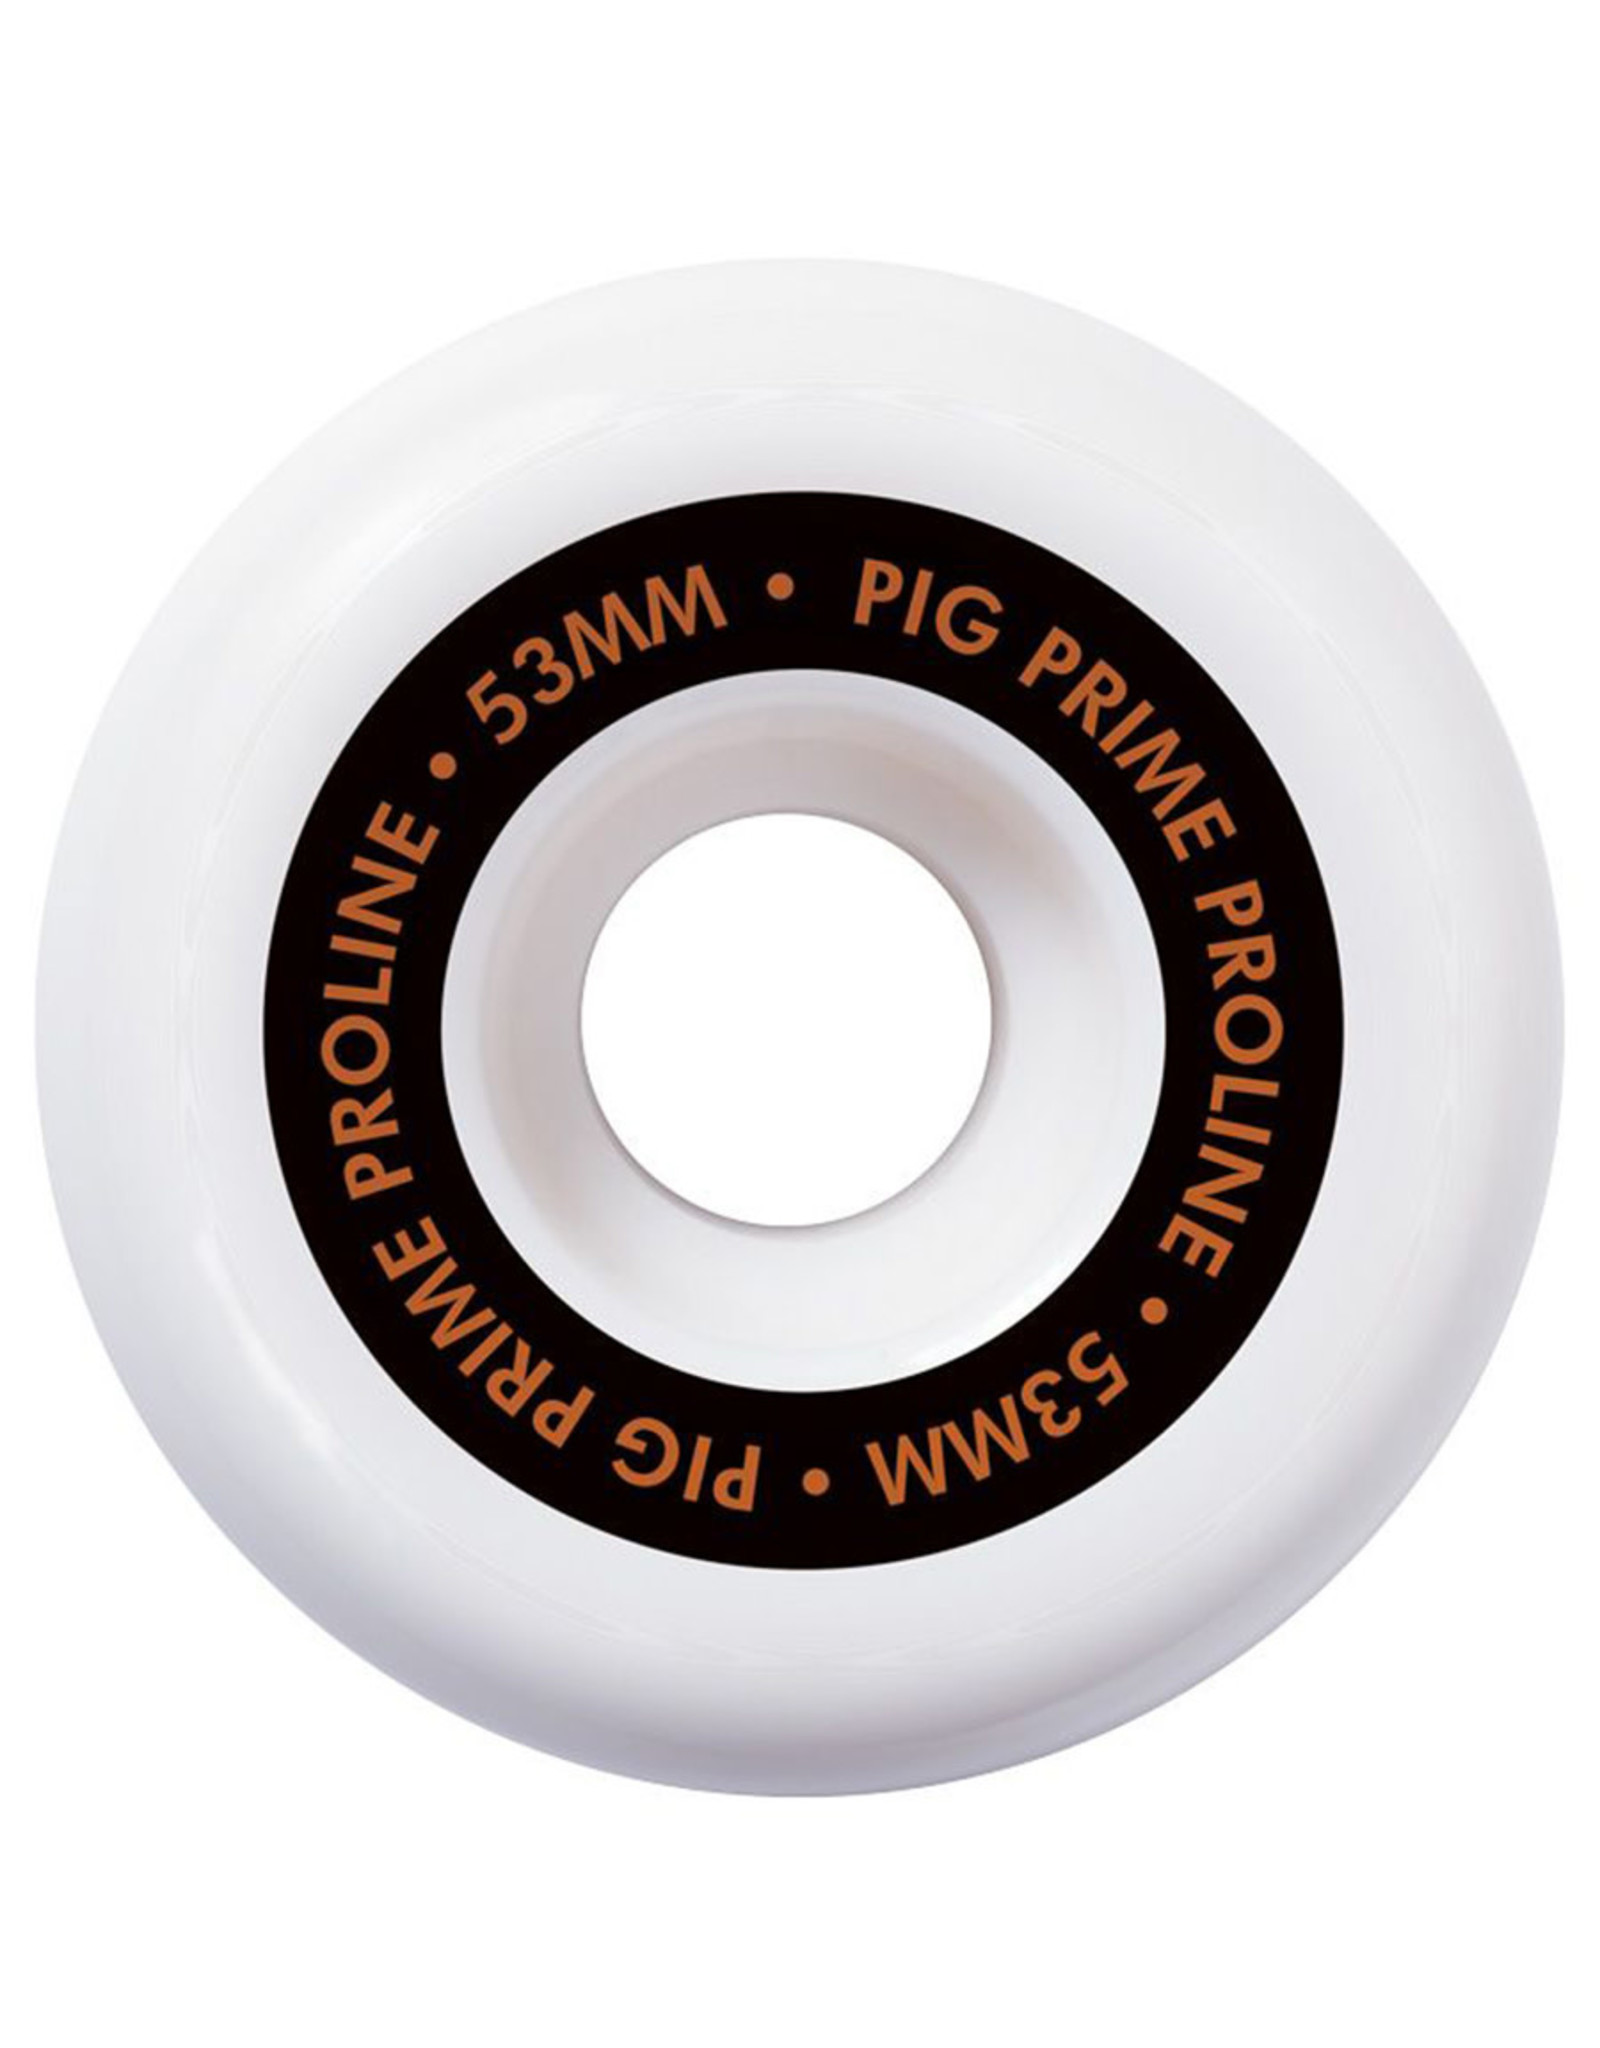 Pig Pig Wheels Prime Proline (56mm/99a)